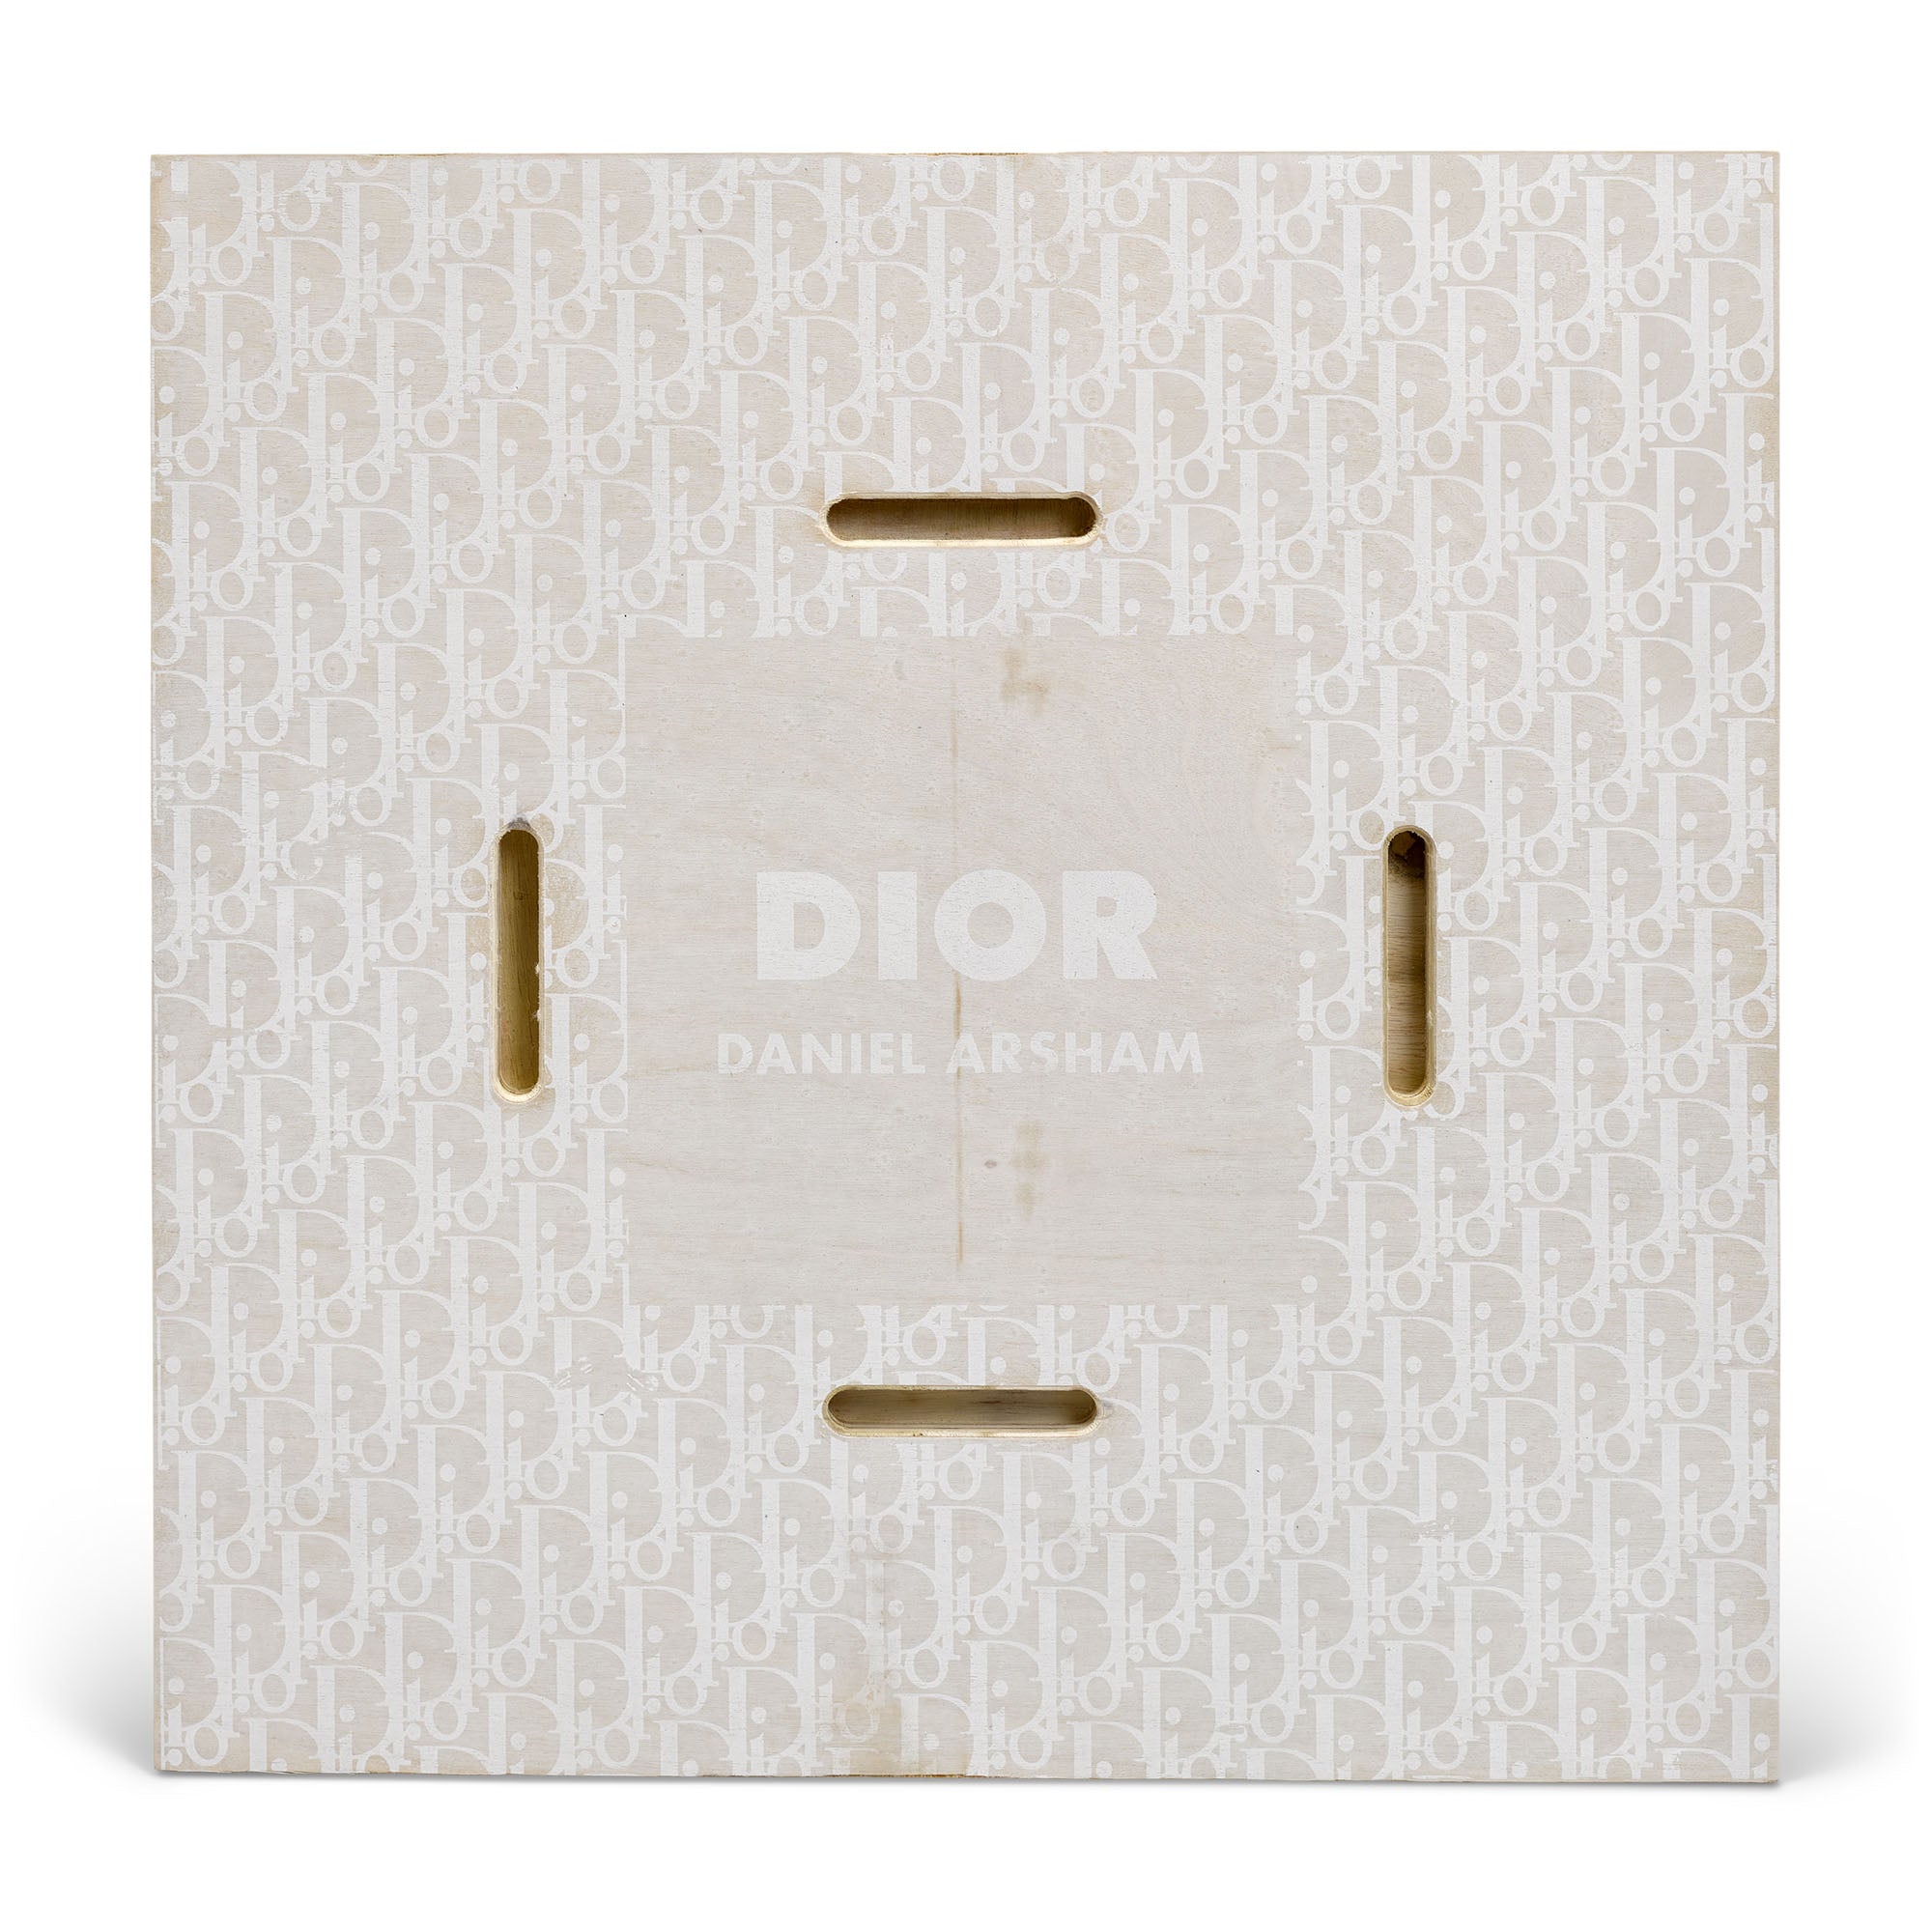 Daniel Arsham Dior Future Relic Phone Sculpture